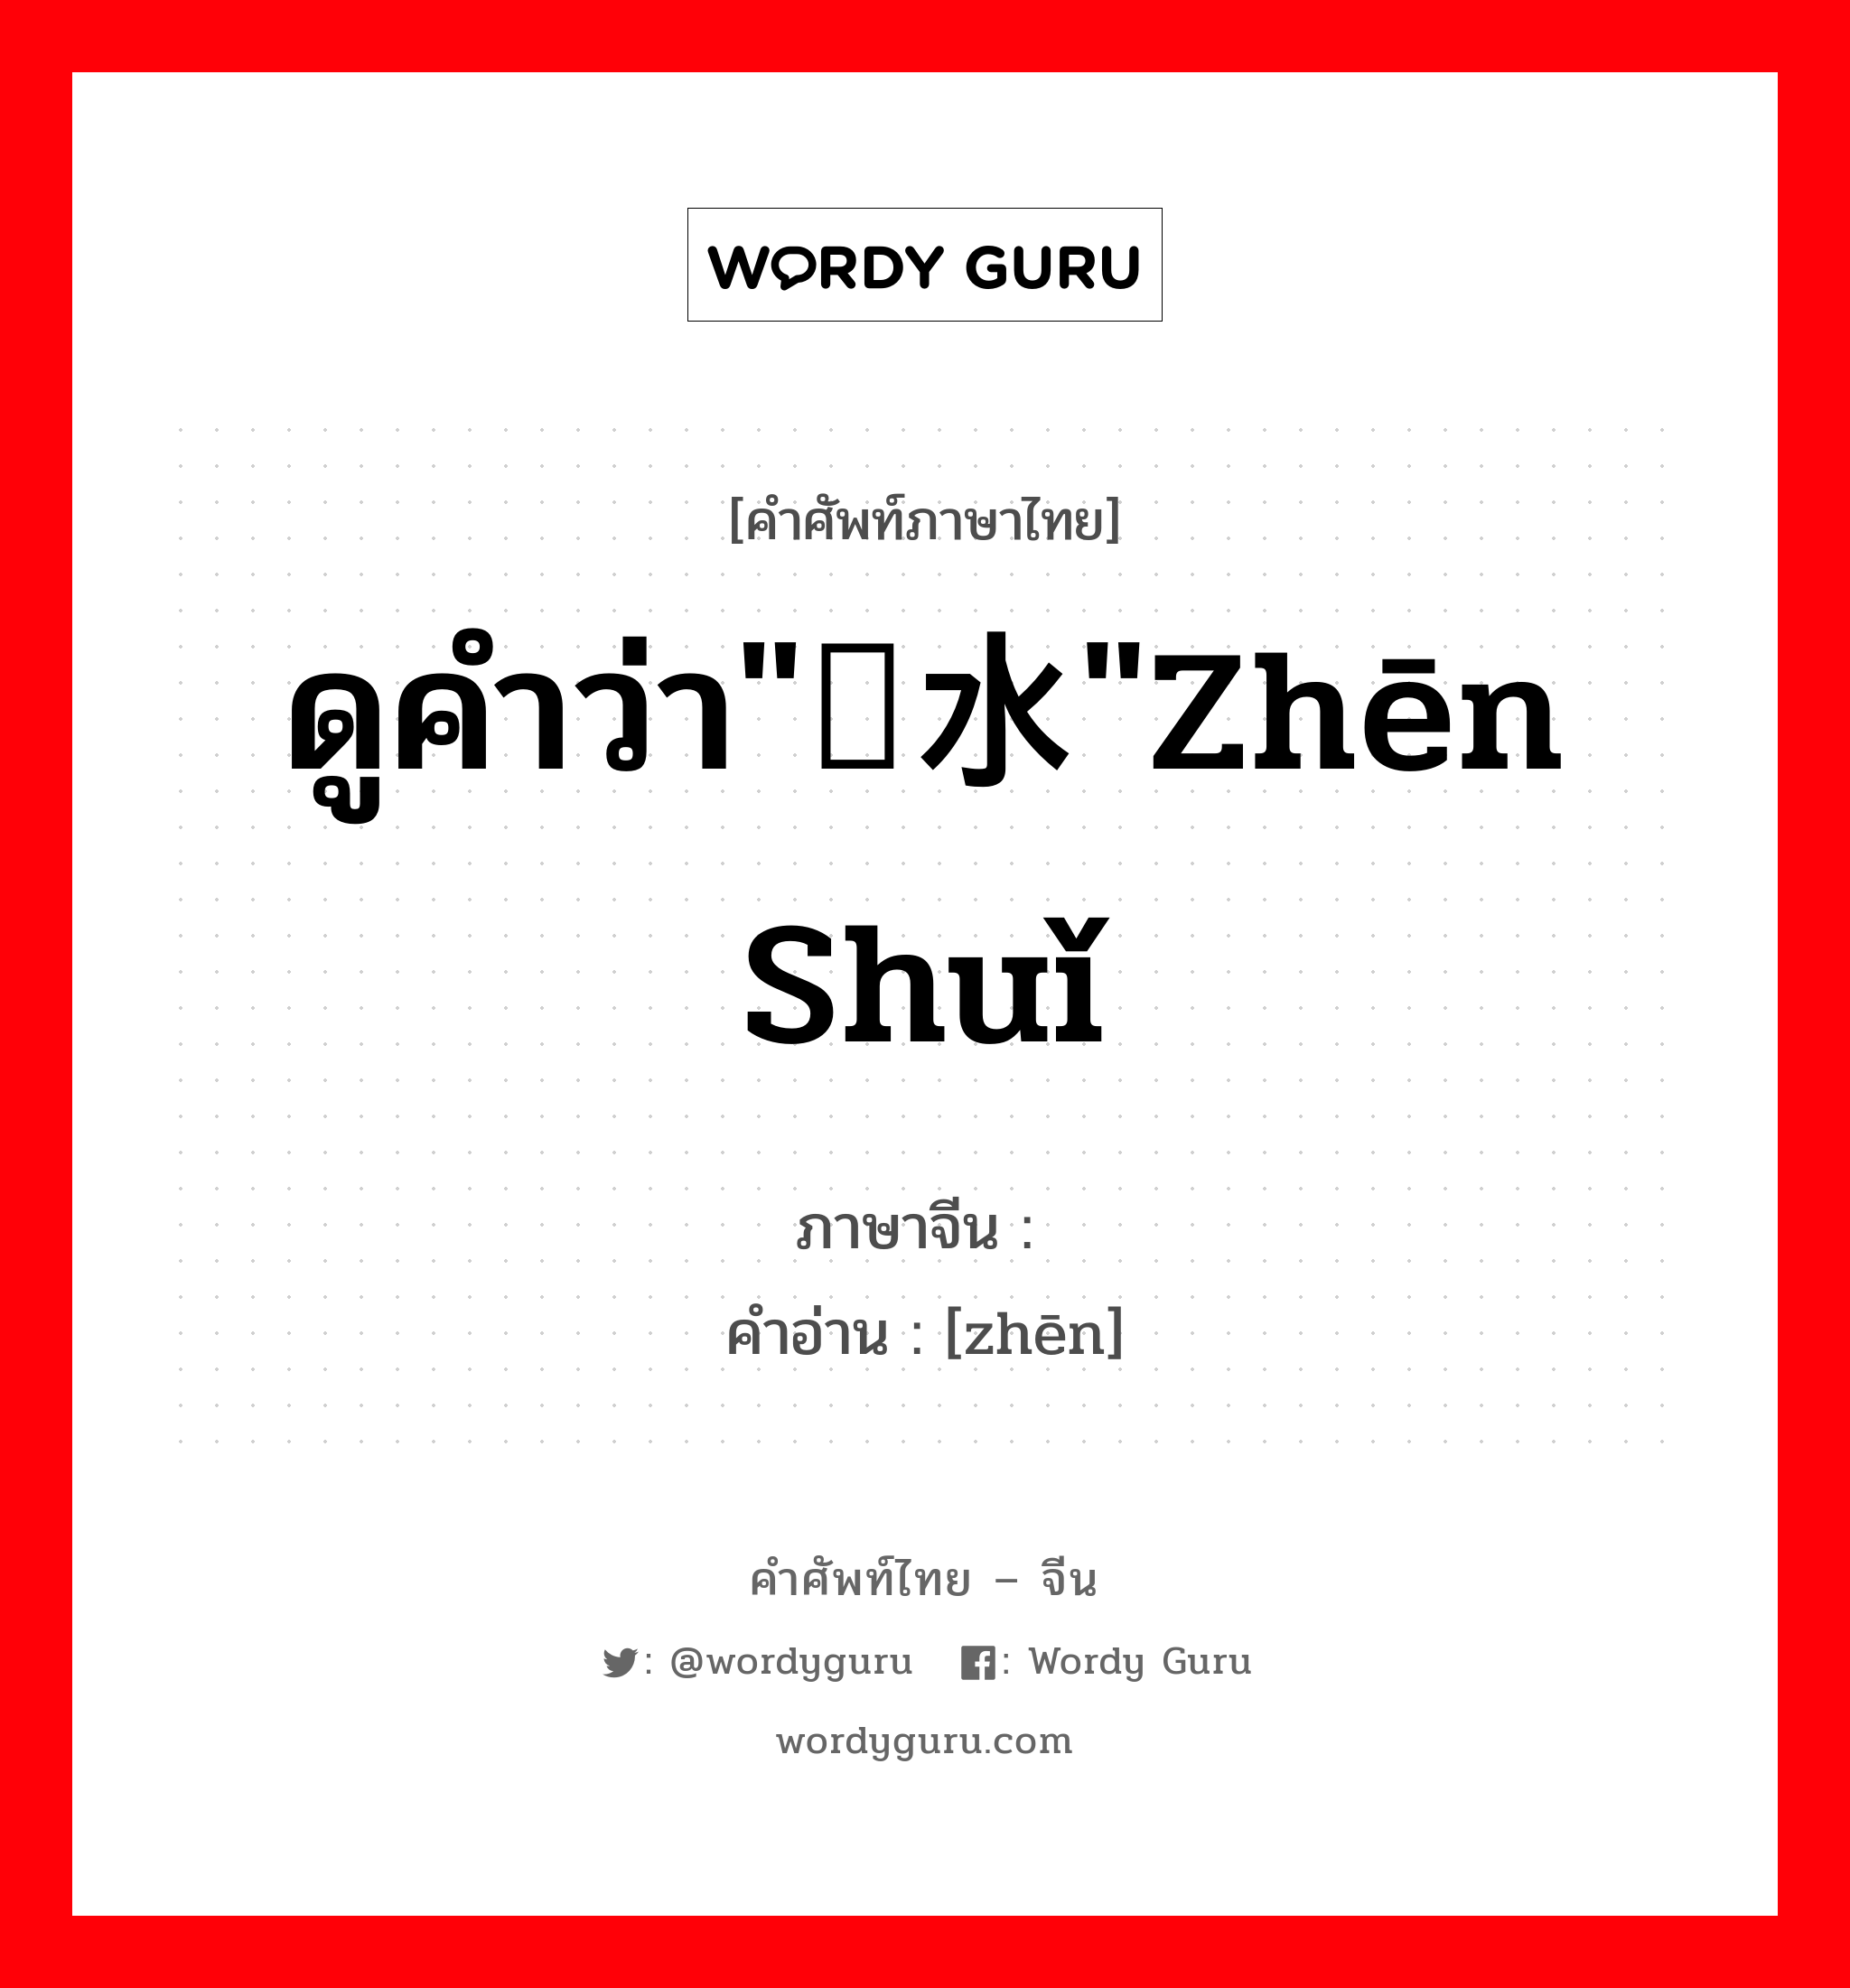 ดูคำว่า"浈水"zhēn shuǐ ภาษาจีนคืออะไร, คำศัพท์ภาษาไทย - จีน ดูคำว่า"浈水"zhēn shuǐ ภาษาจีน 浈 คำอ่าน [zhēn]